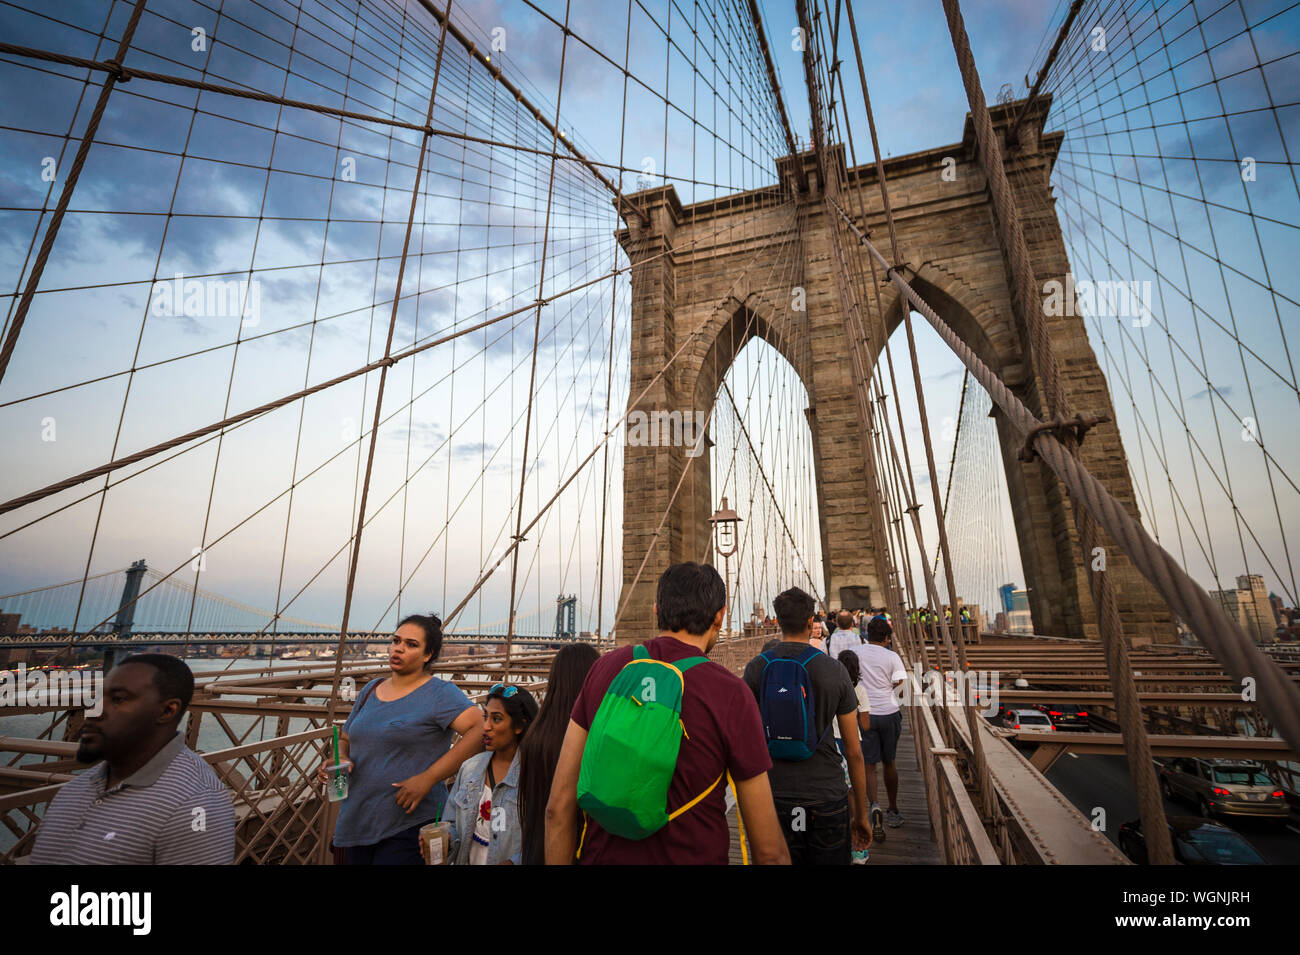 NEW YORK - 26 août 2017 : les touristes et habitants de la lutte pour l'espace sur l'allée piétonne bondée menant à travers le pont de Brooklyn au crépuscule. Banque D'Images